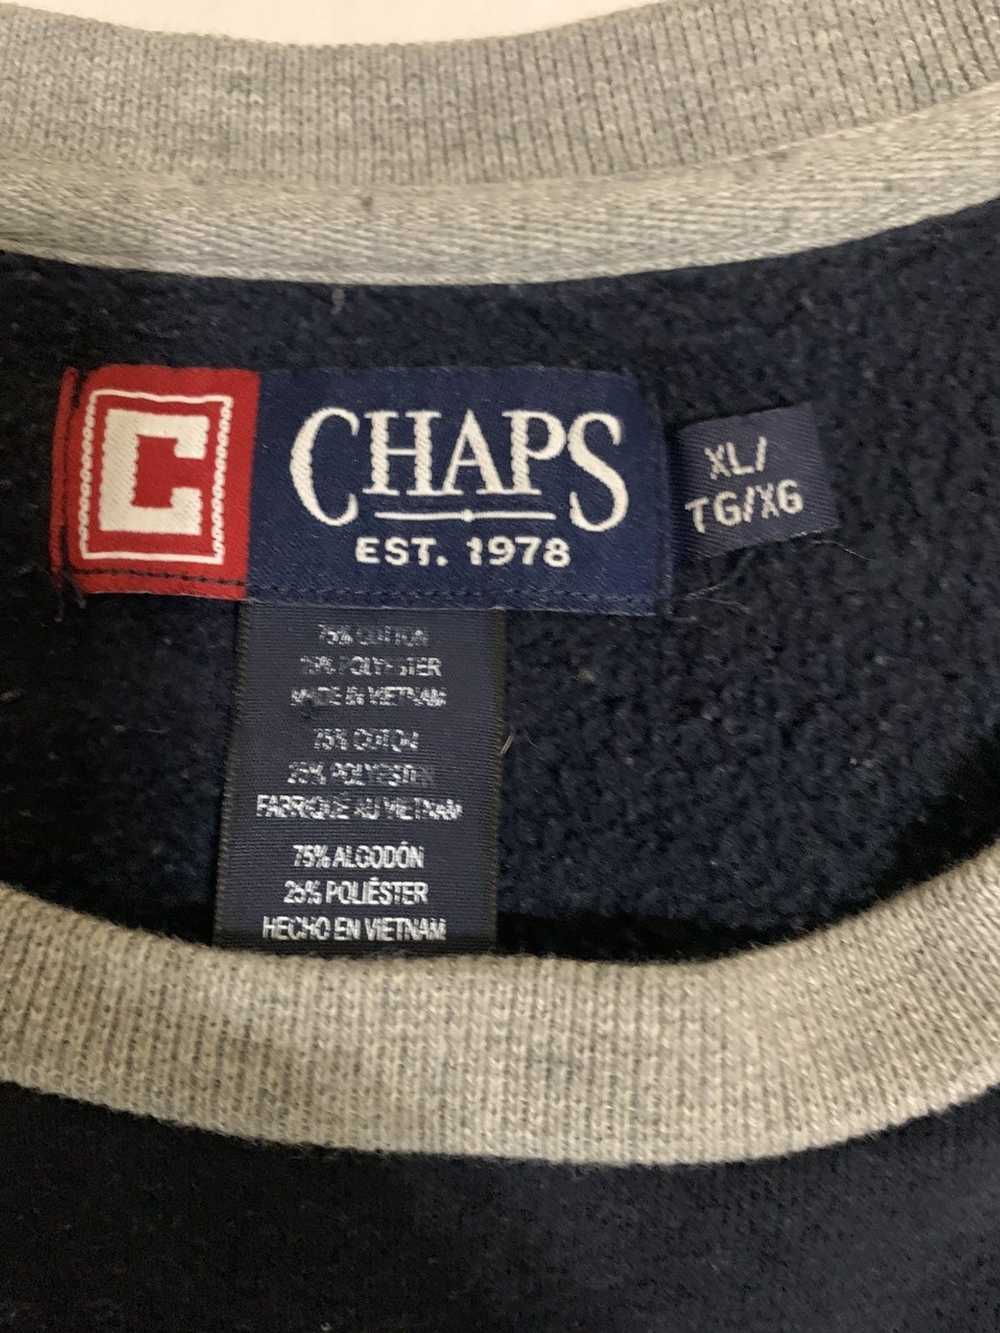 Chaps Ralph Lauren VINTAGE x CHAPS est. 1978 - image 2